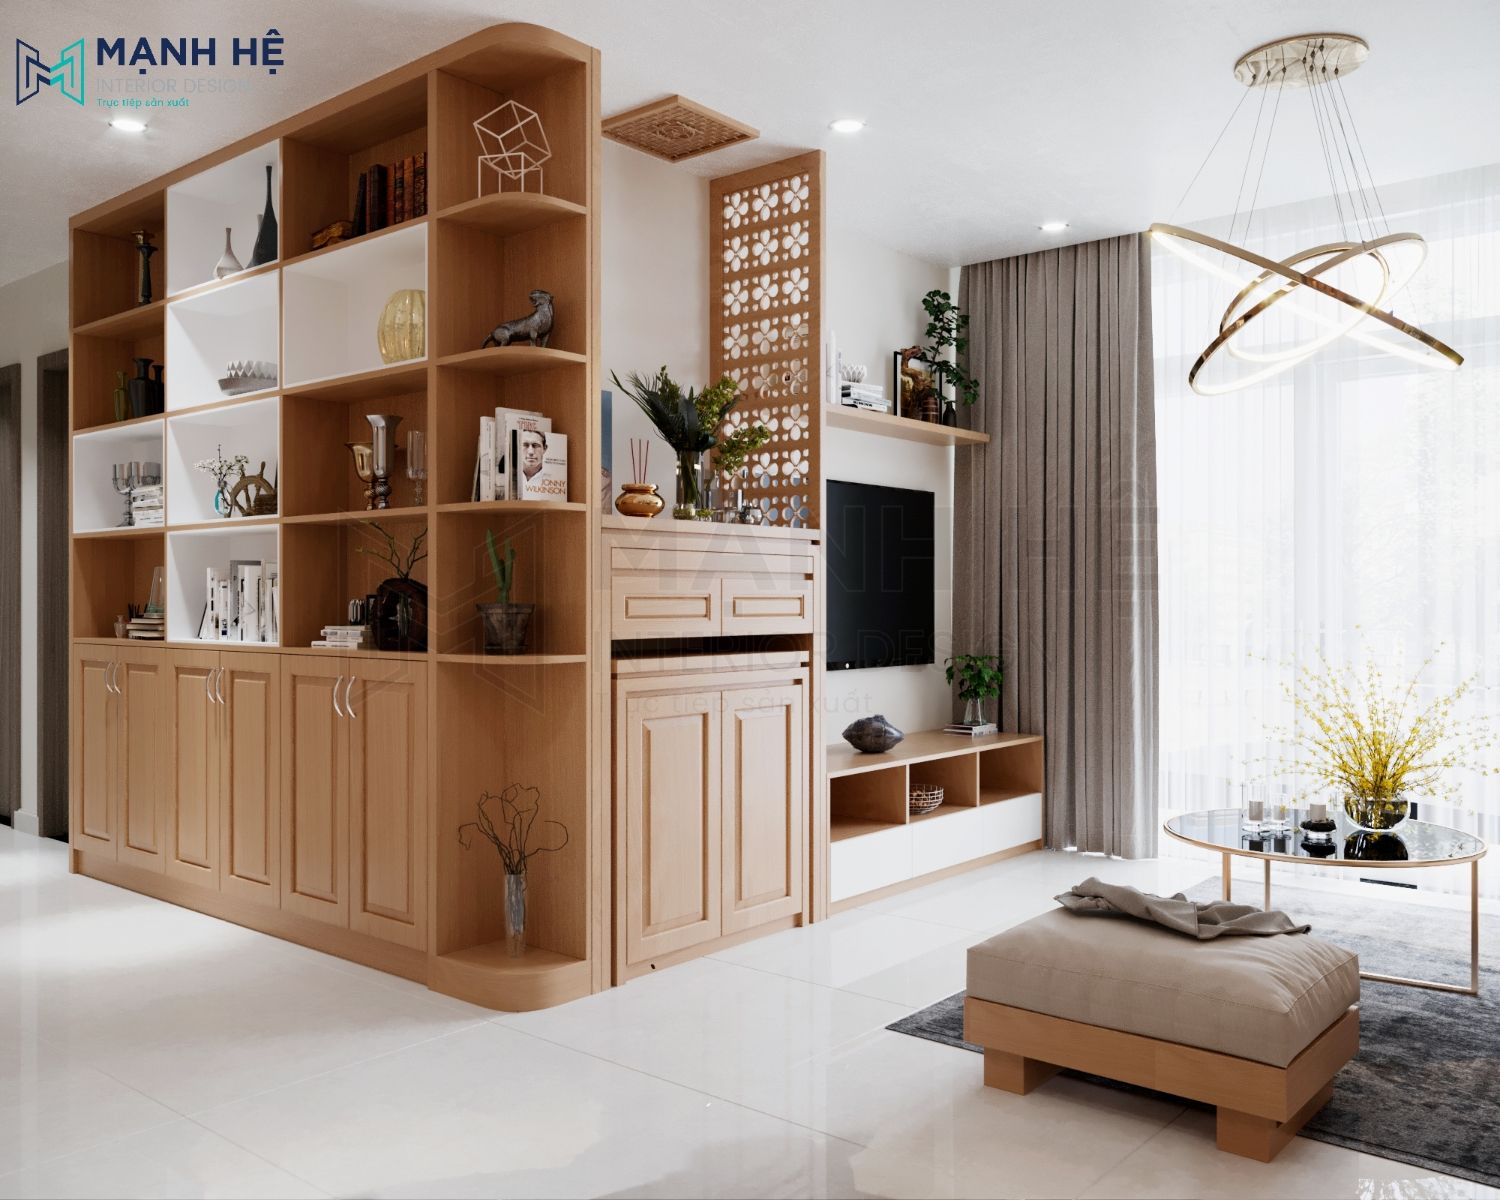 Hệ tủ kệ trang trí phòng khách bằng gỗ tự nhiên